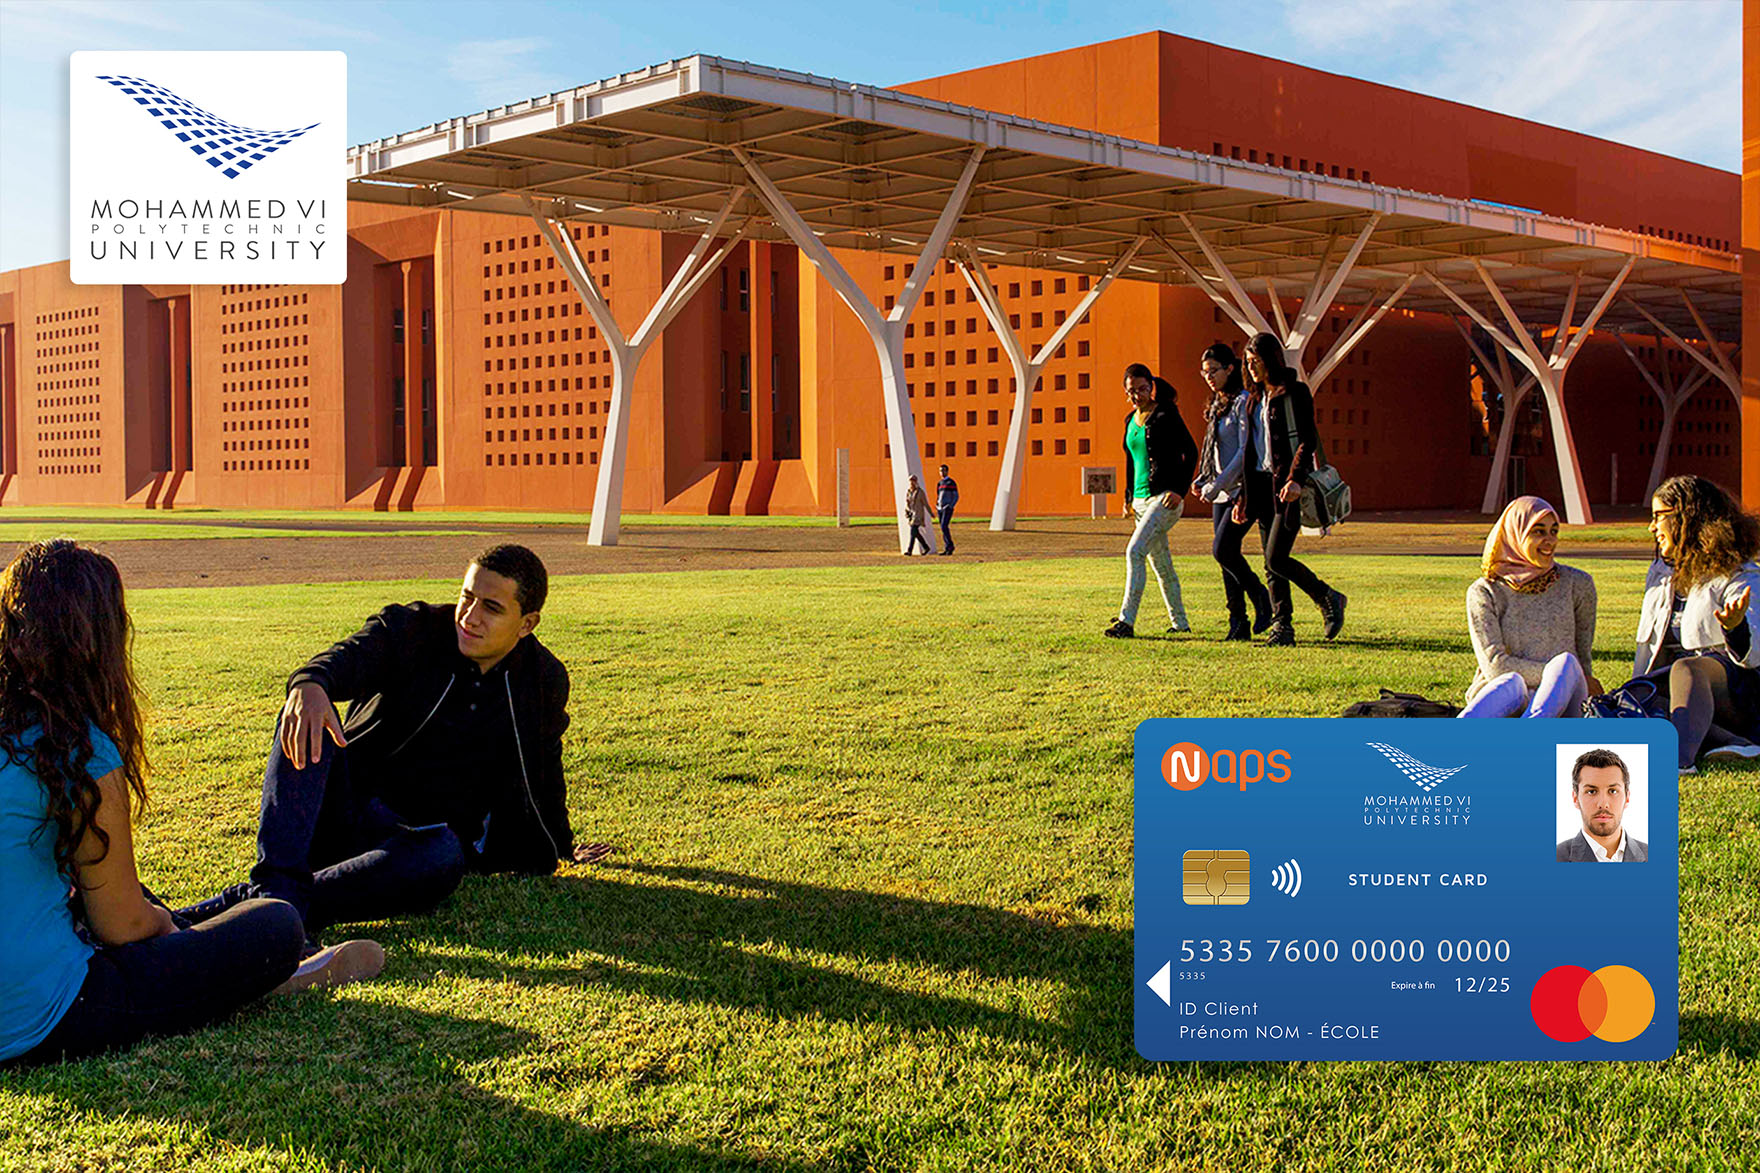 Les étudiants de l'Université Mohammed VI de Benguerir embarquent pour l'année académique 2020-2021 munis de leurs cartes étudiants NAPS